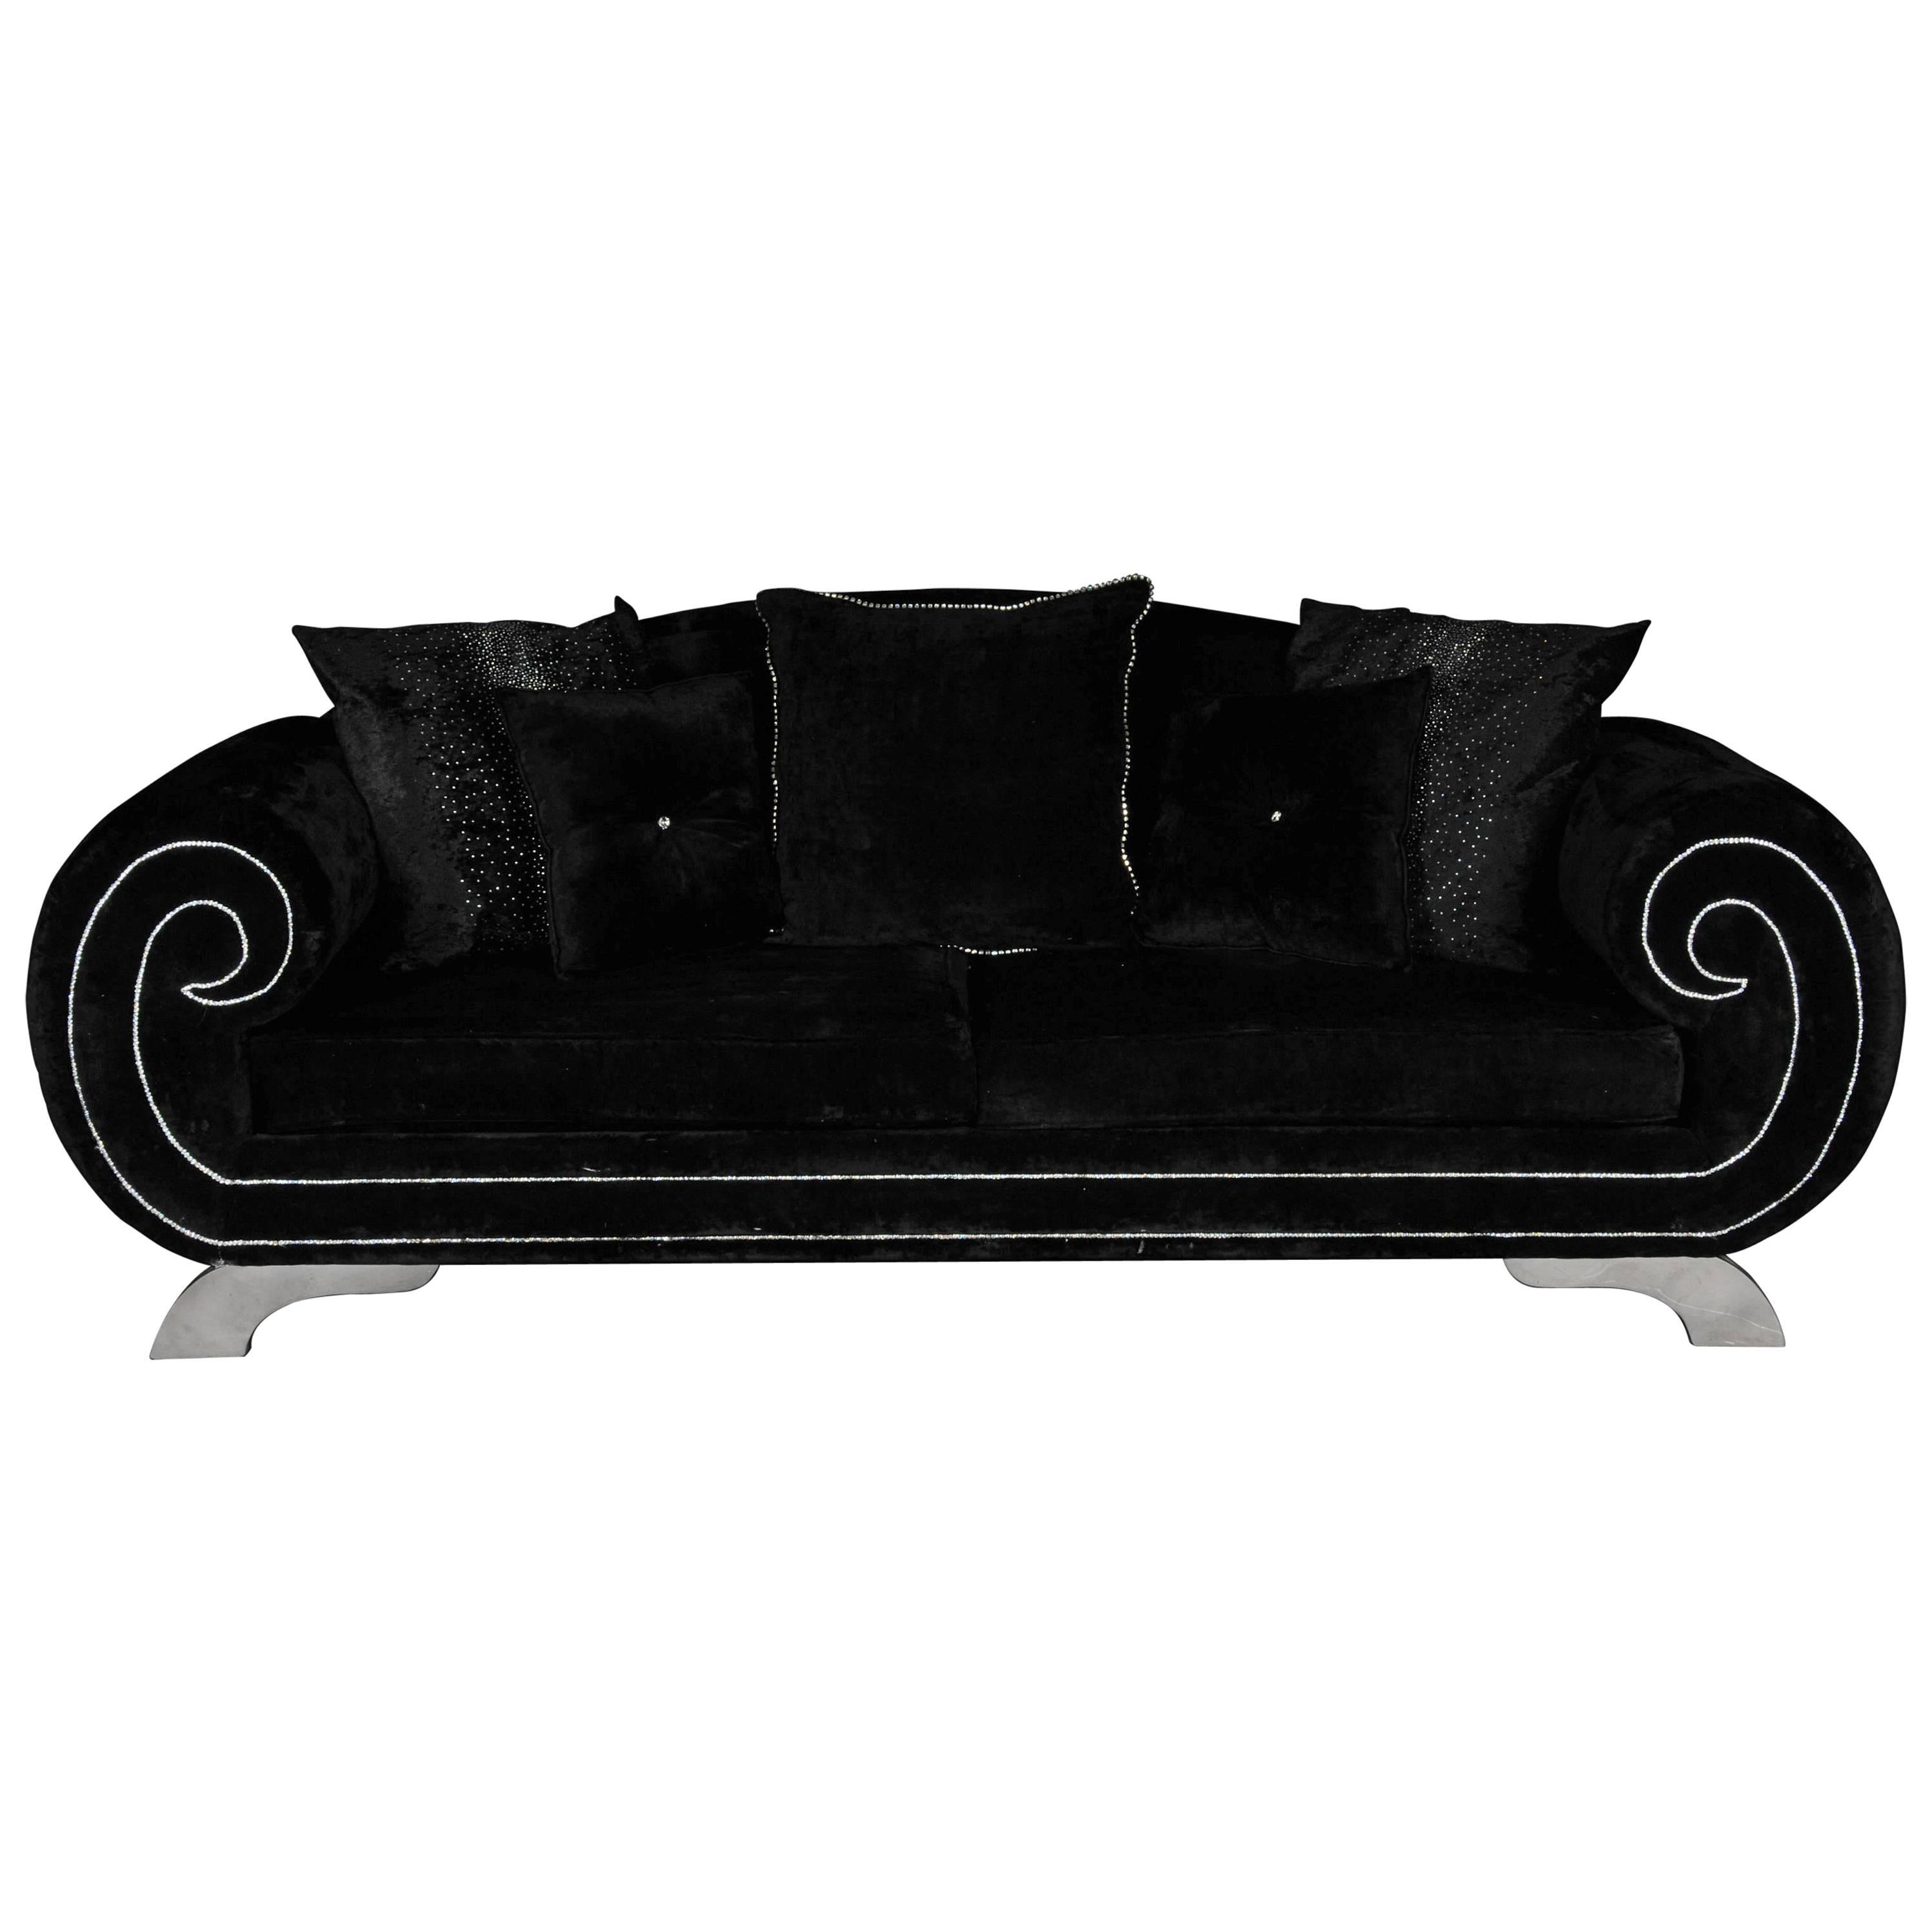 Canapé ou pochette de designer unique et luxueux, strass et rehaut en velours noir